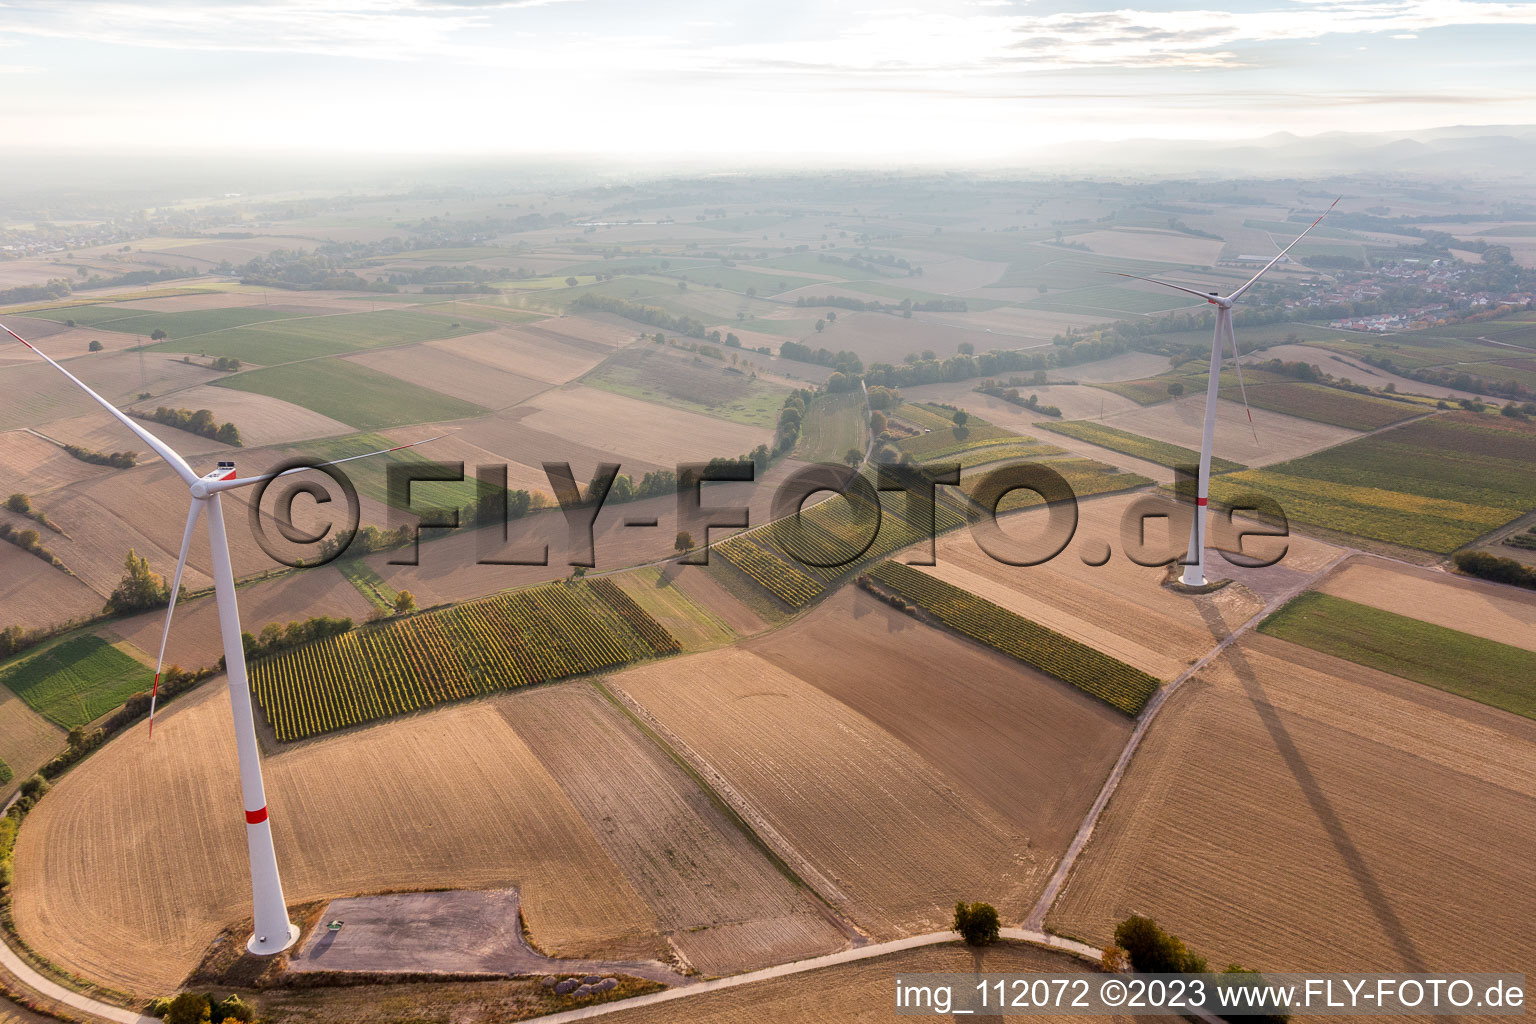 Vue d'oiseau de Parc éolien EnBW - éolienne avec 6 éoliennes à Freckenfeld dans le département Rhénanie-Palatinat, Allemagne